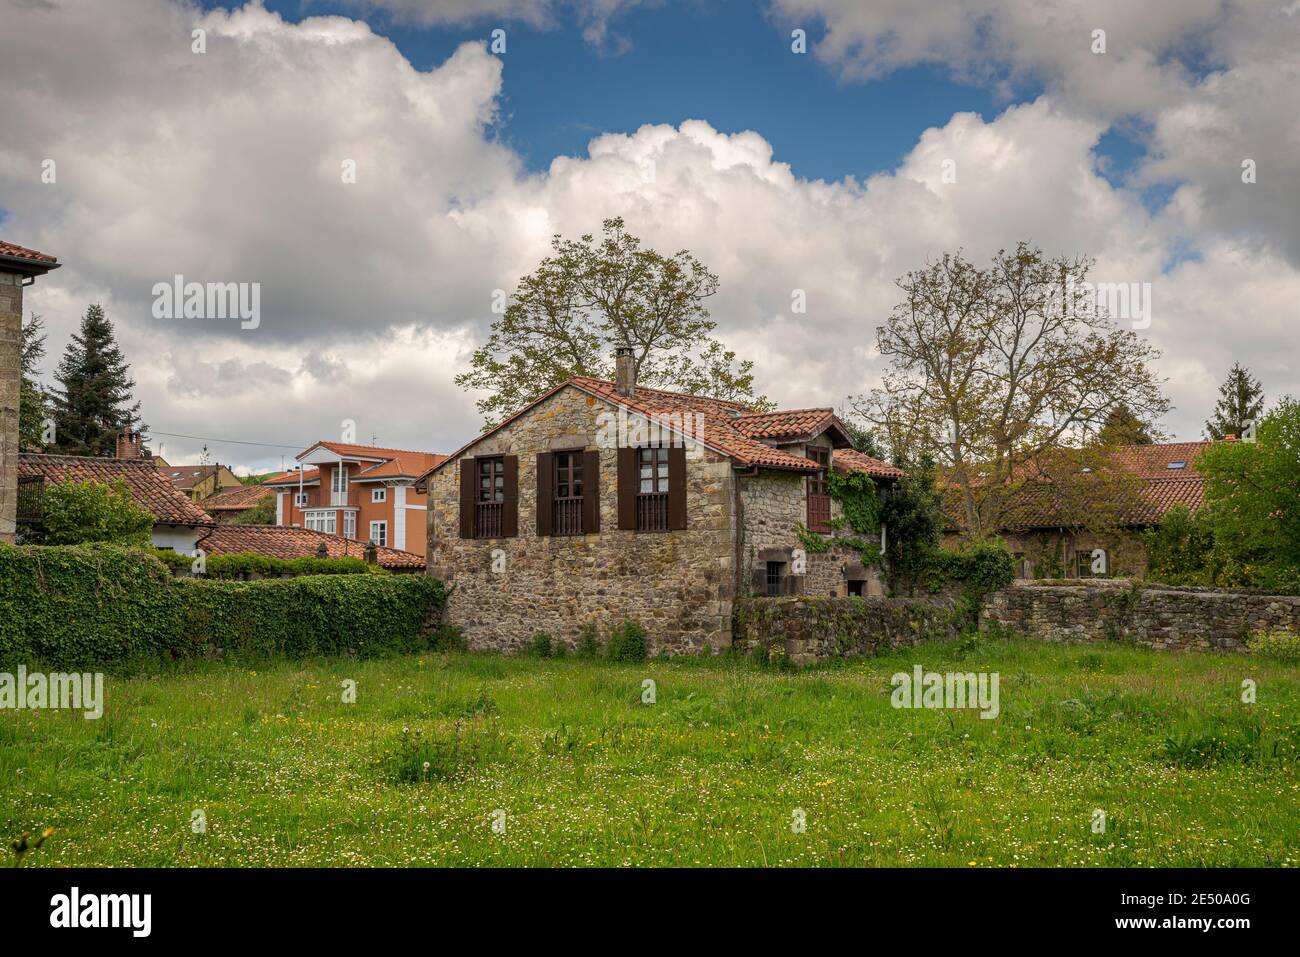 Arquitectura tradicional en la ciudad de Lierganes, provincia de Cantabria, España Foto de stock